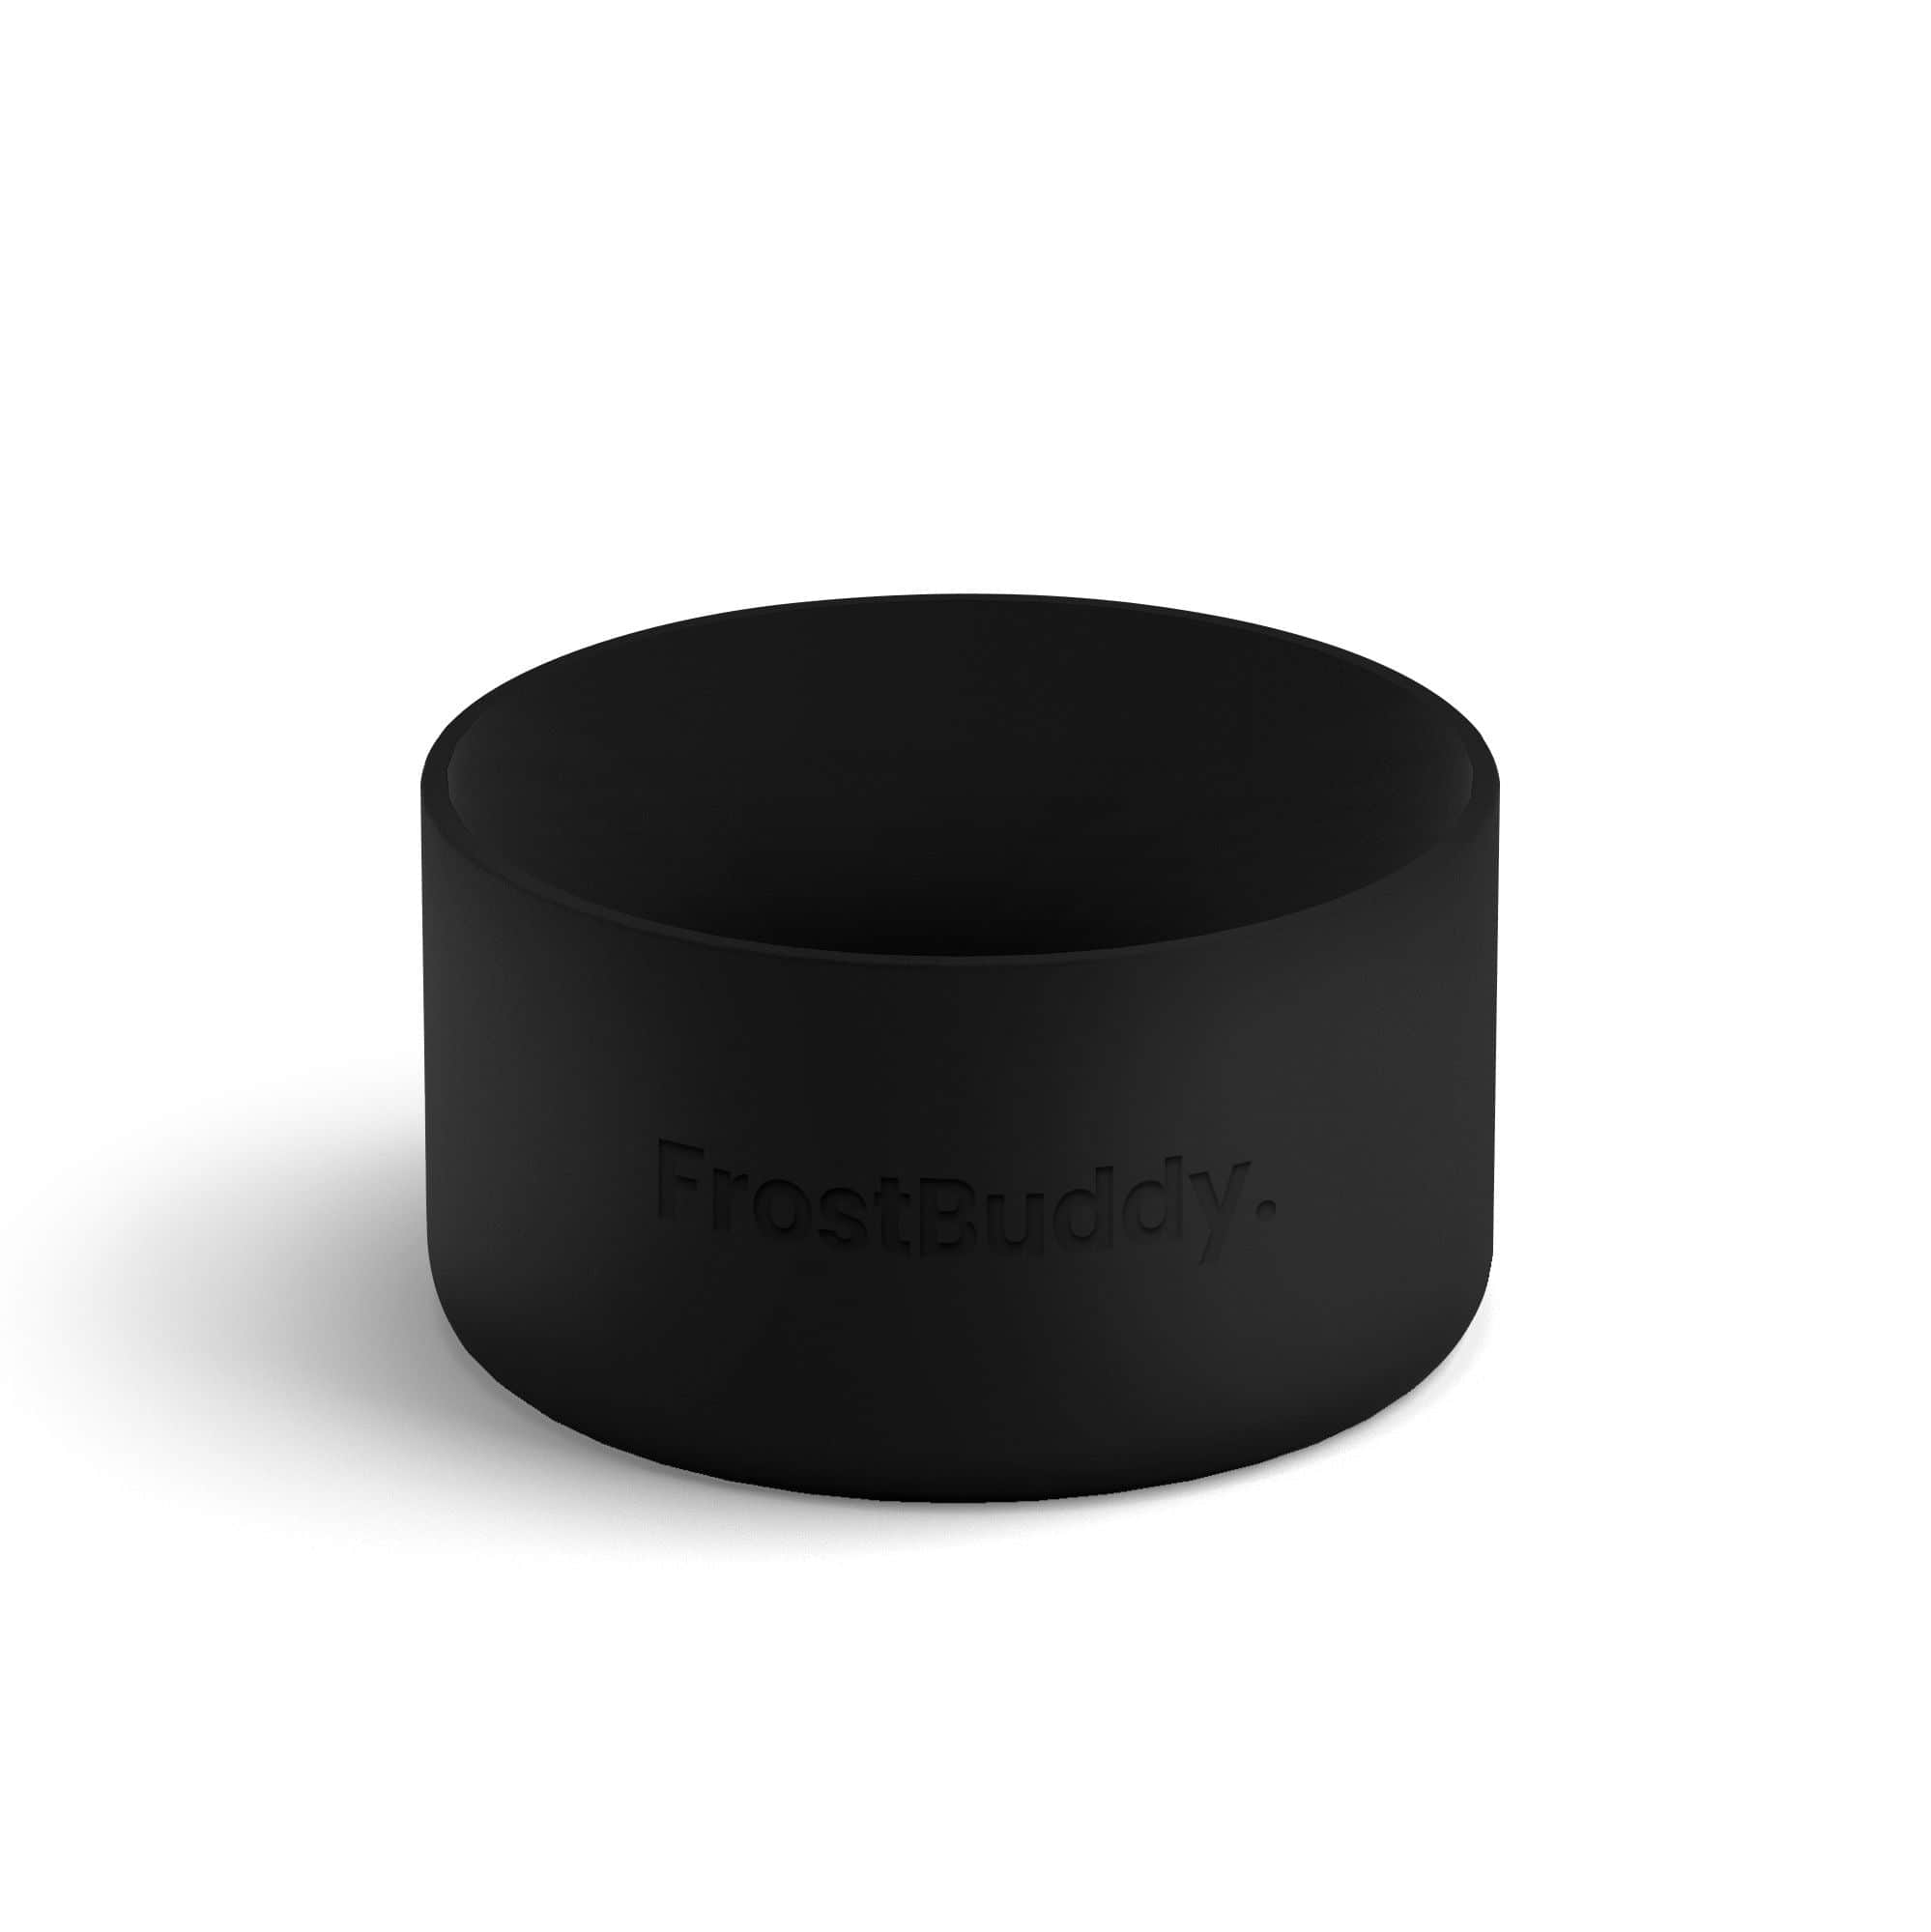 FrostBuddy® Universal Buddy 2.0 - Matte Finish – MakerFlo Crafts